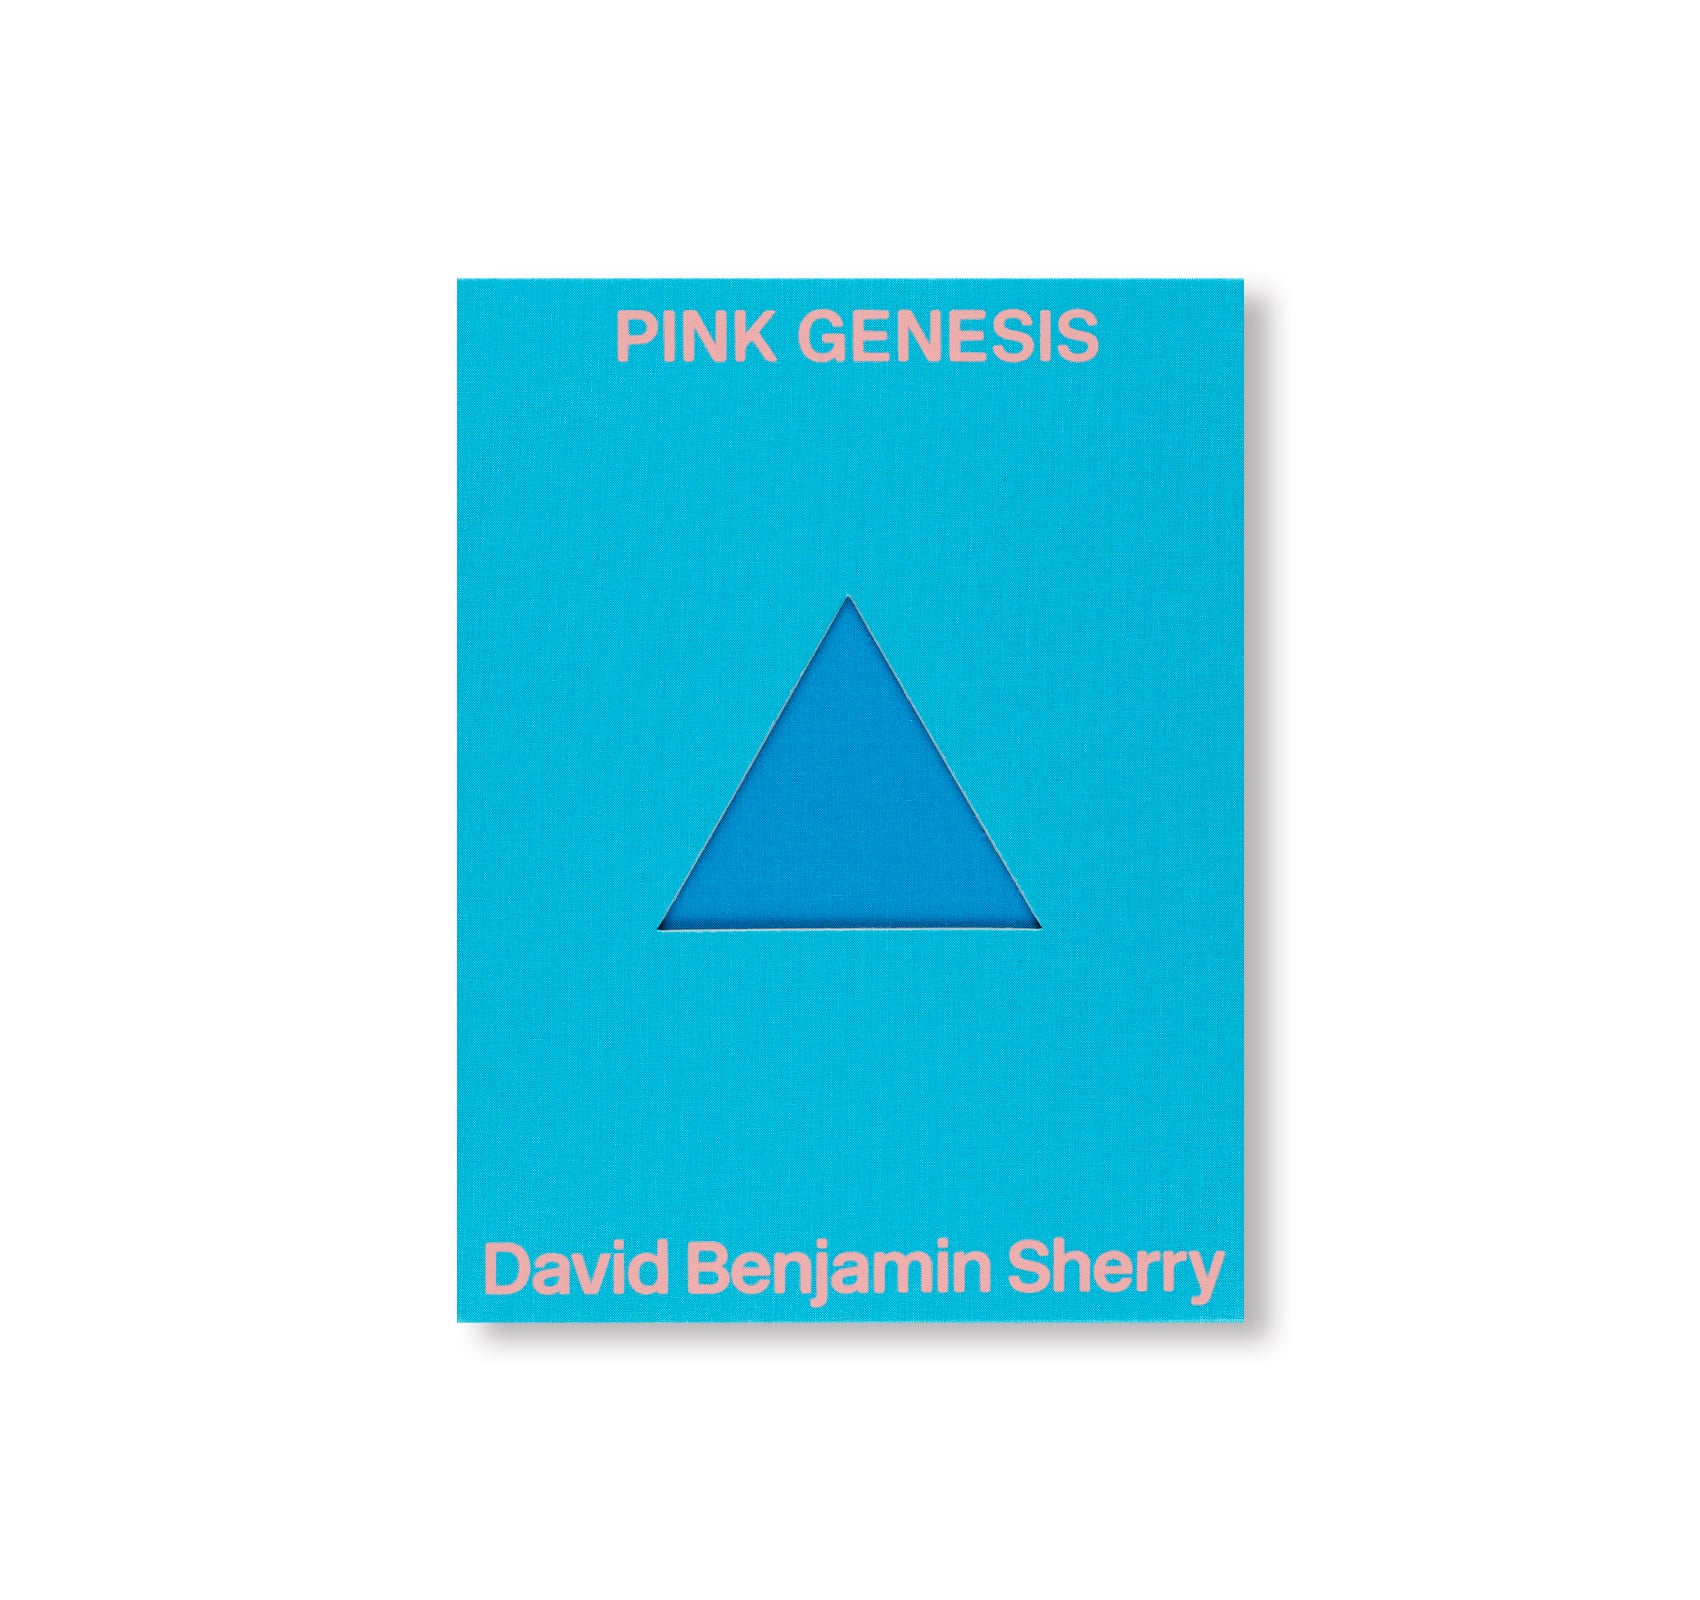 PINK GENESIS by David Benjamin Sherry